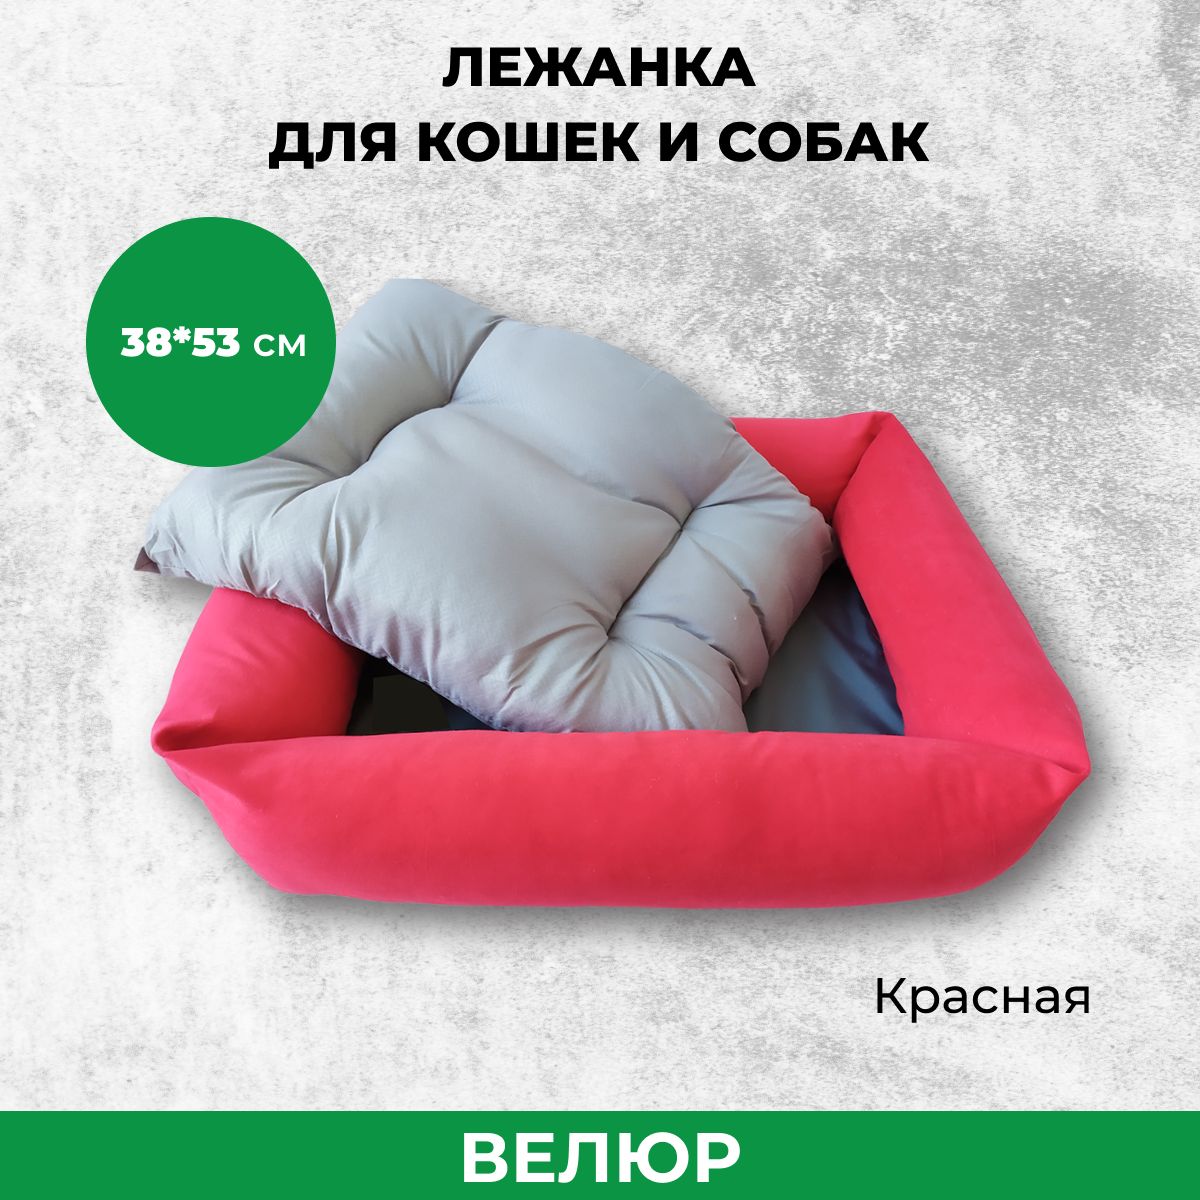 Лежанка для кошек и собак FRAIS с бортами и подушкой, красный, велюр, 38x53 см